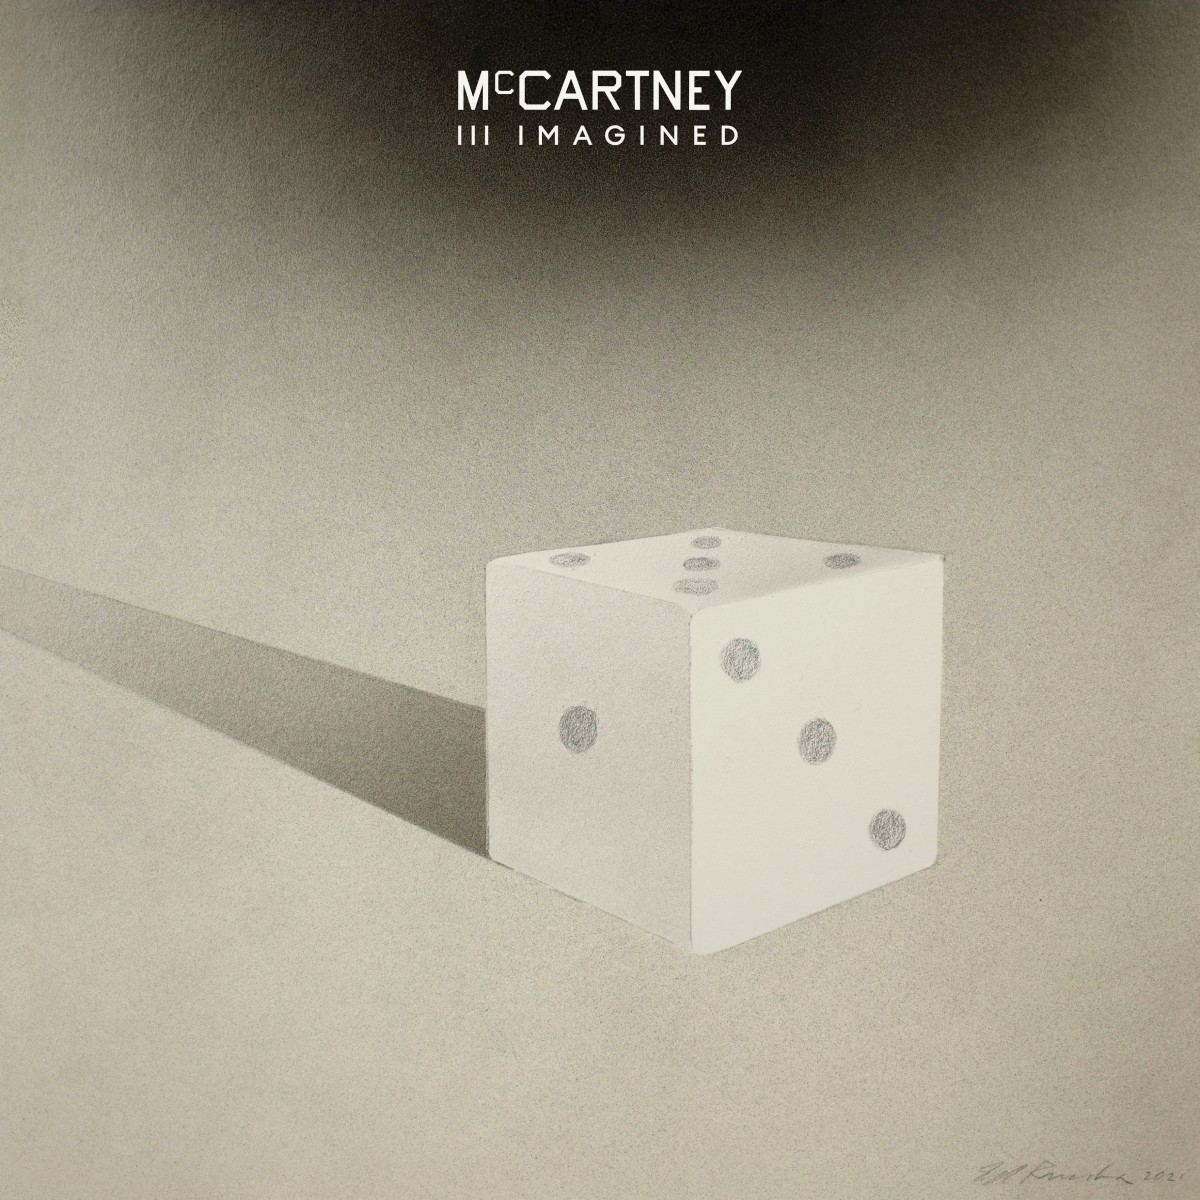 McCartney III Imagined (album cover)